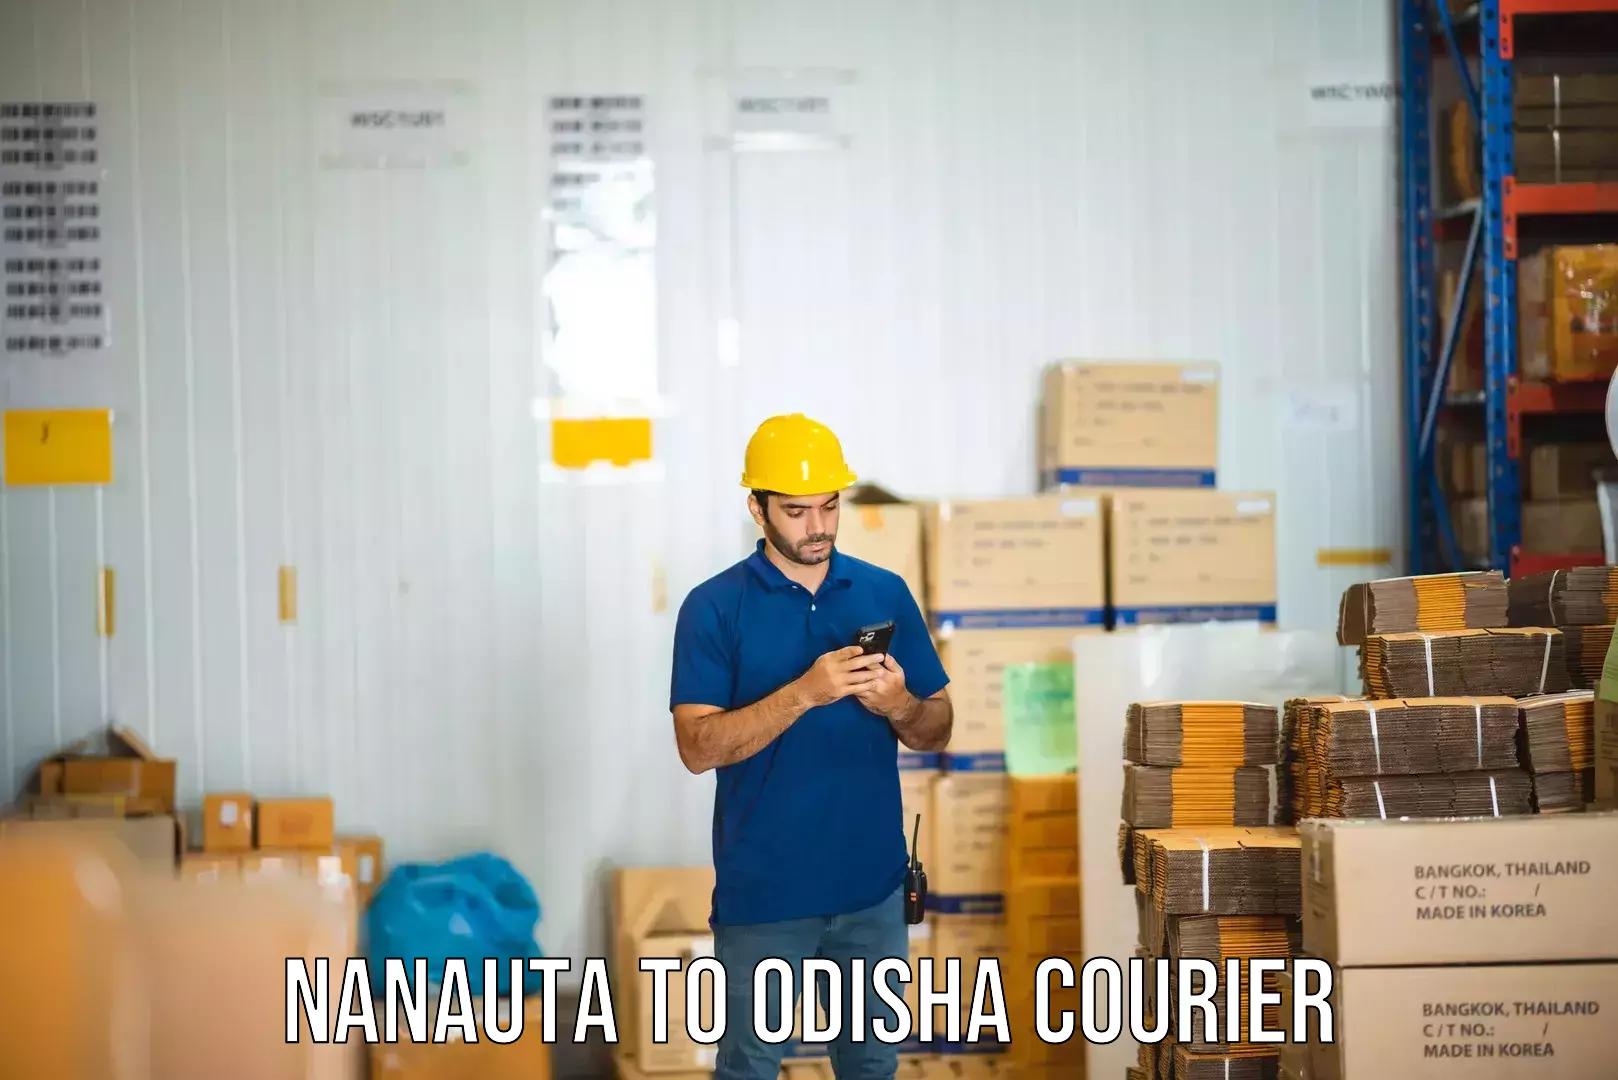 Courier service booking Nanauta to Balikuda